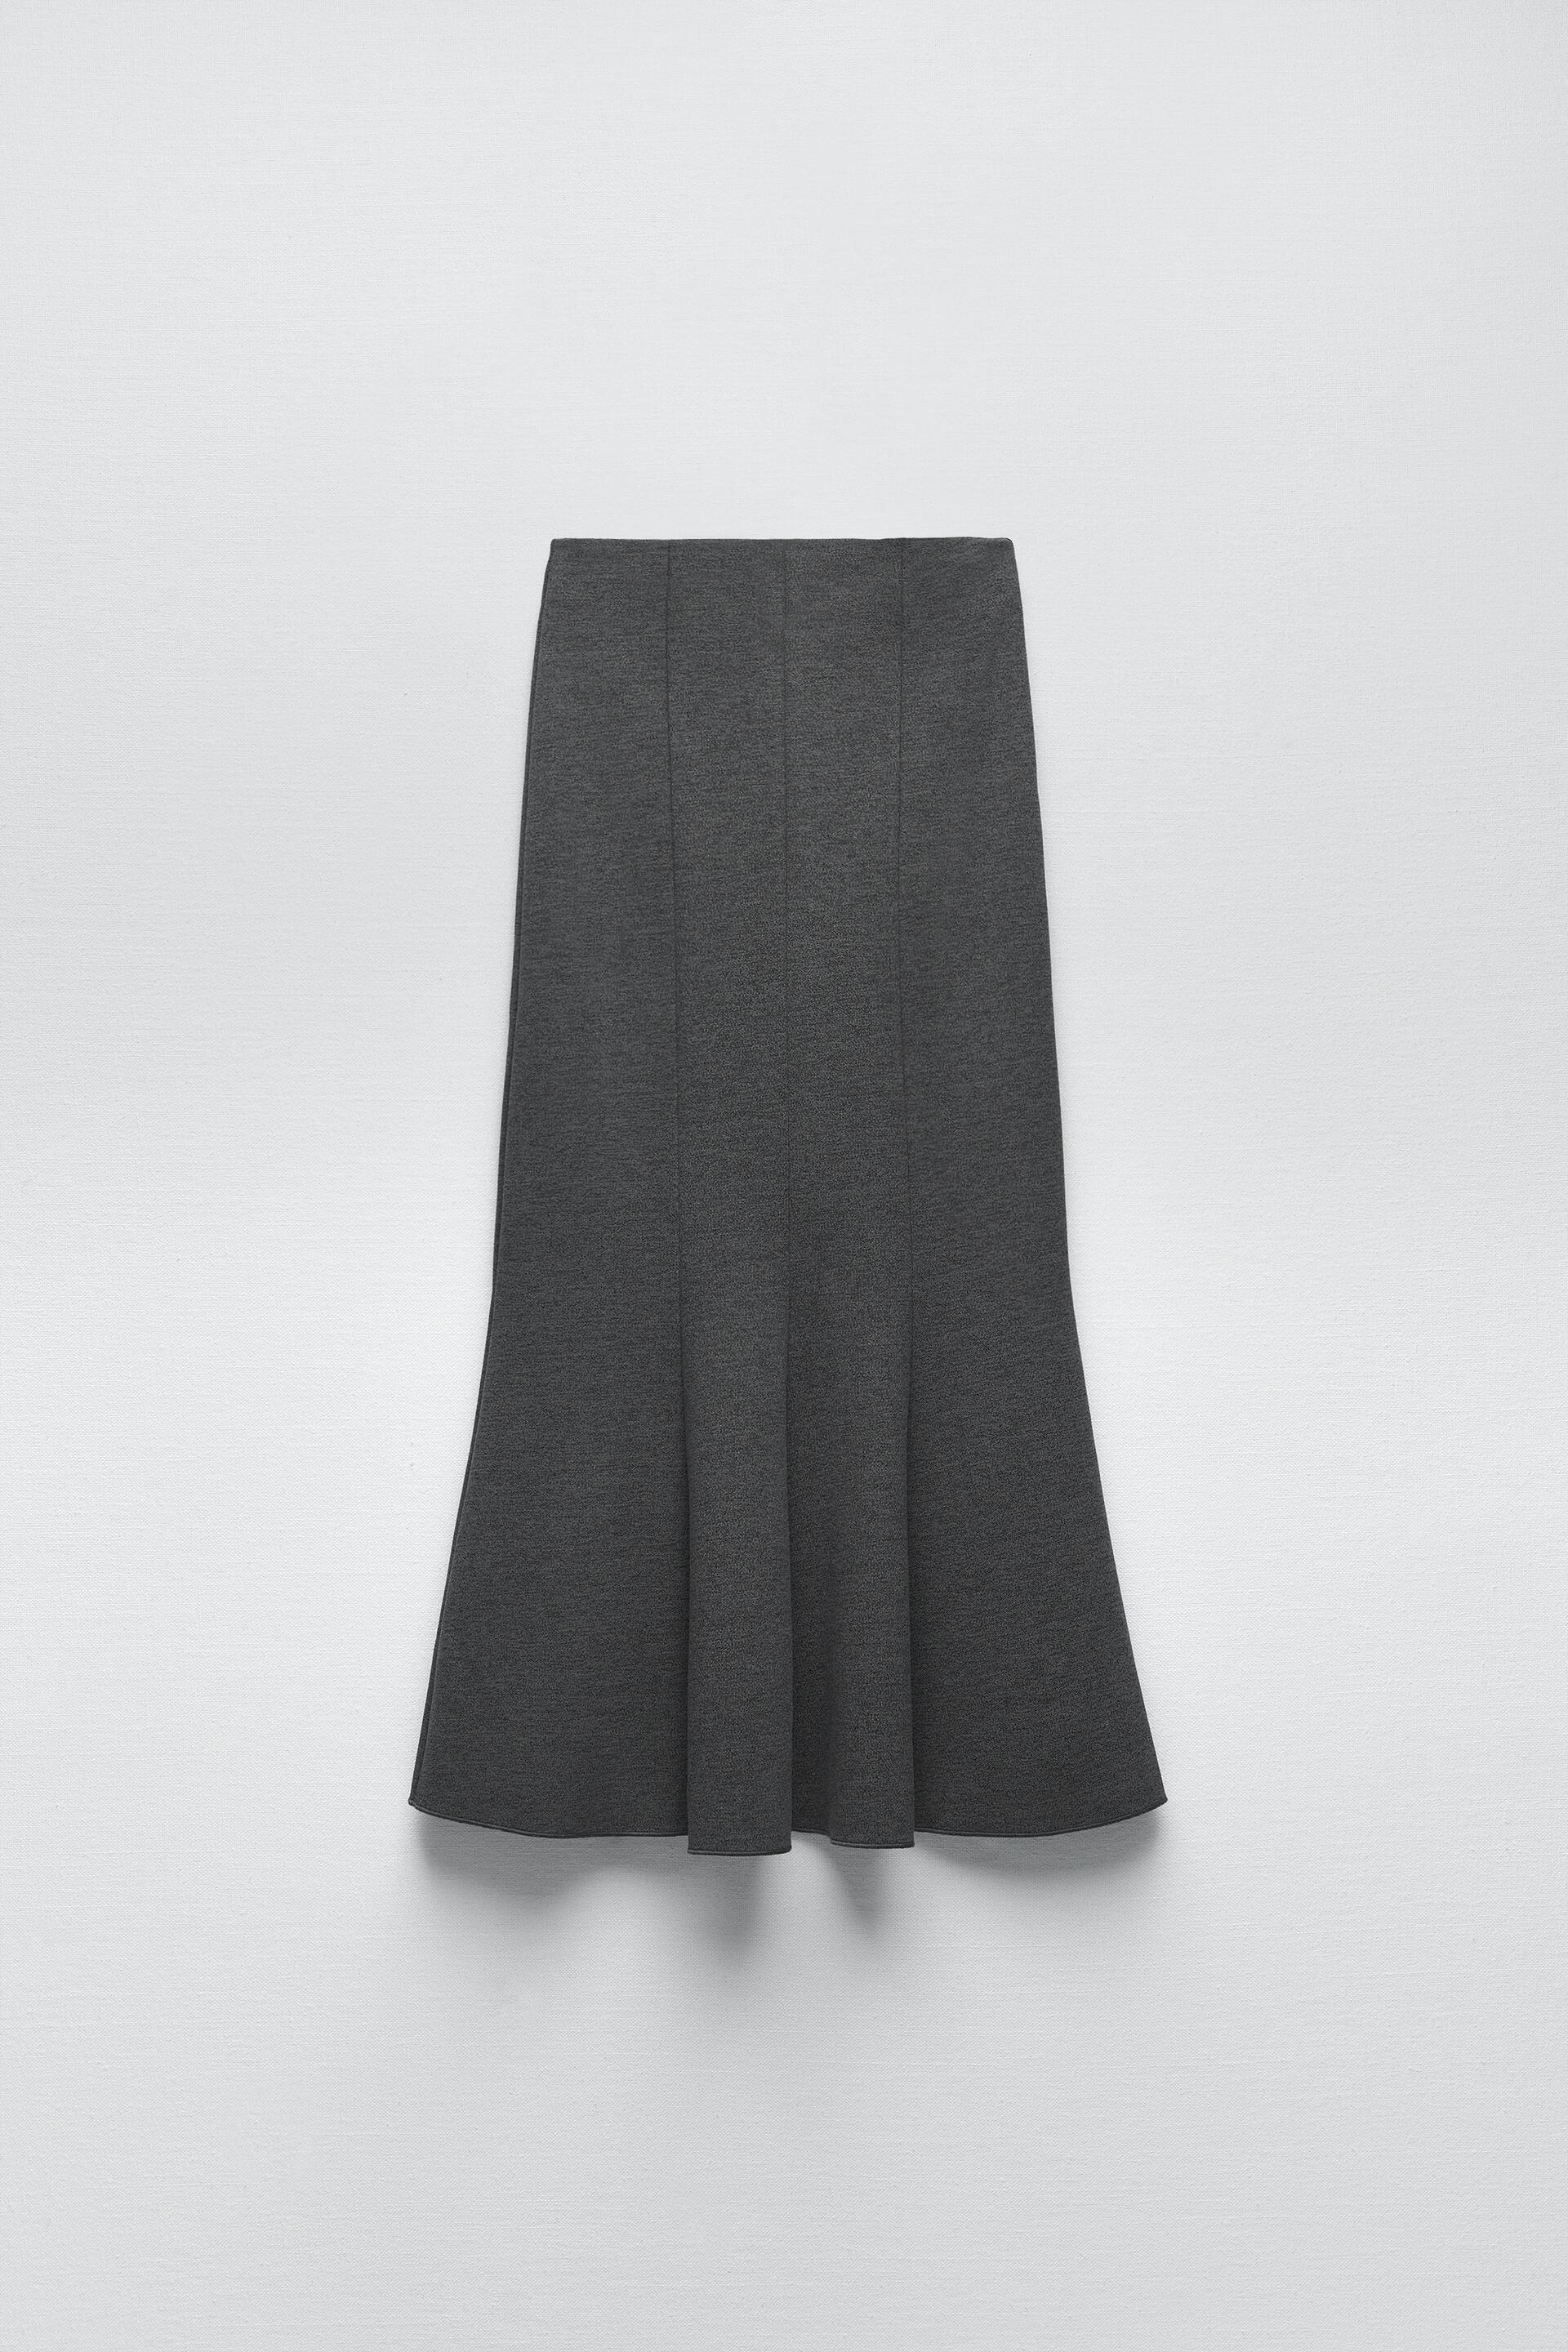 Zara Stretch Knit Midi Skirt - Big Apple Buddy